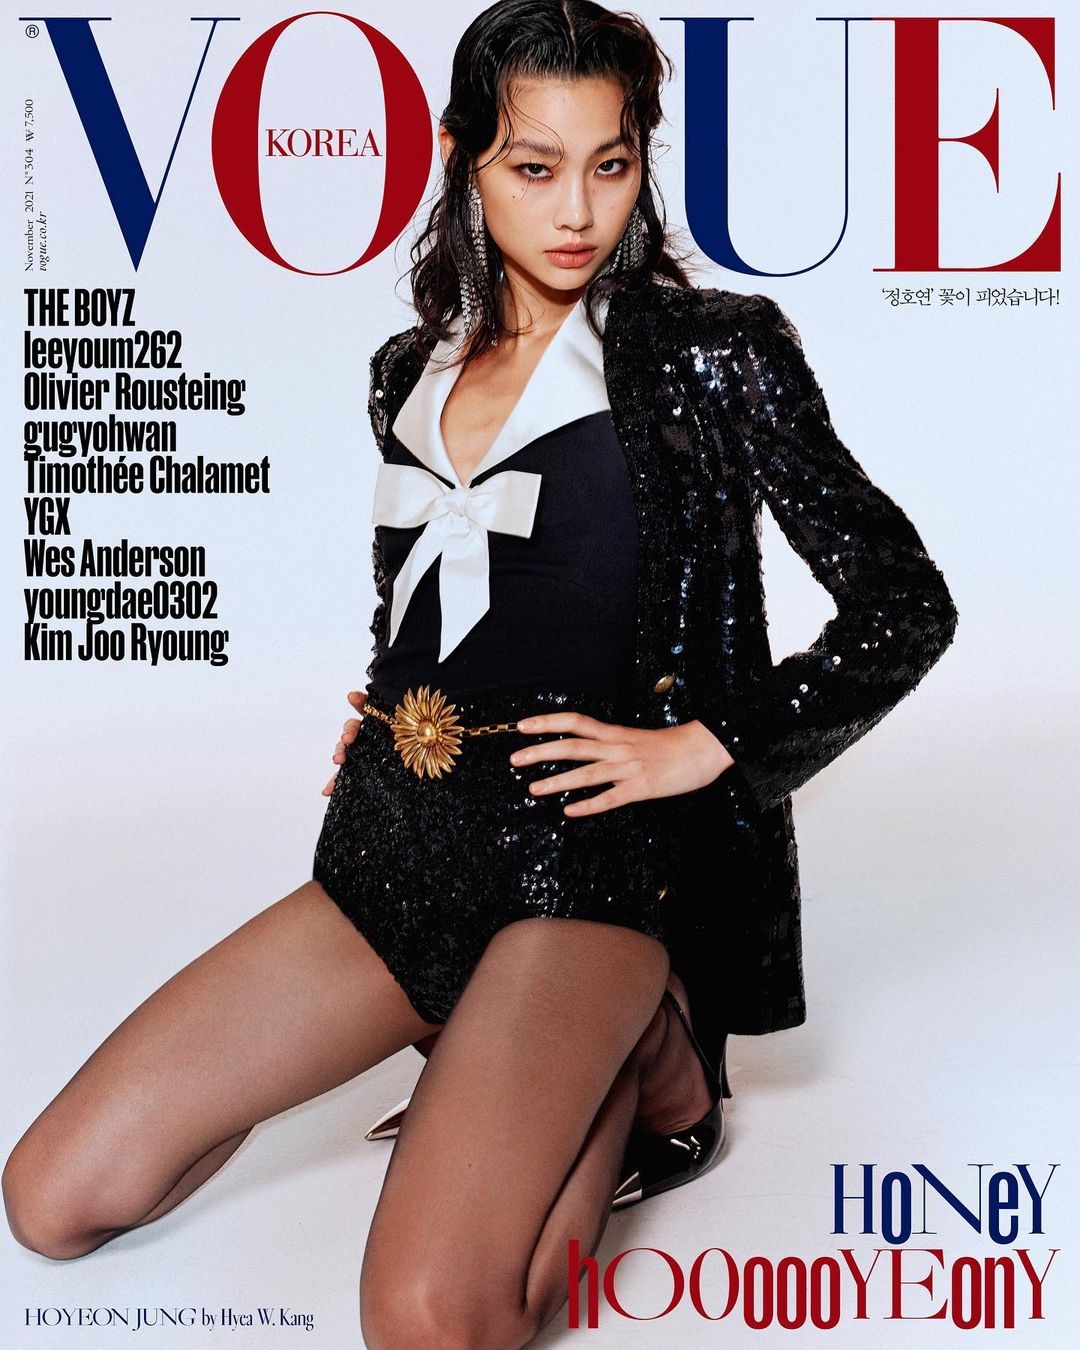 Звезда "Игры в кальмара" Чон Хо Ен снялась для обложки Vogue - фото №2